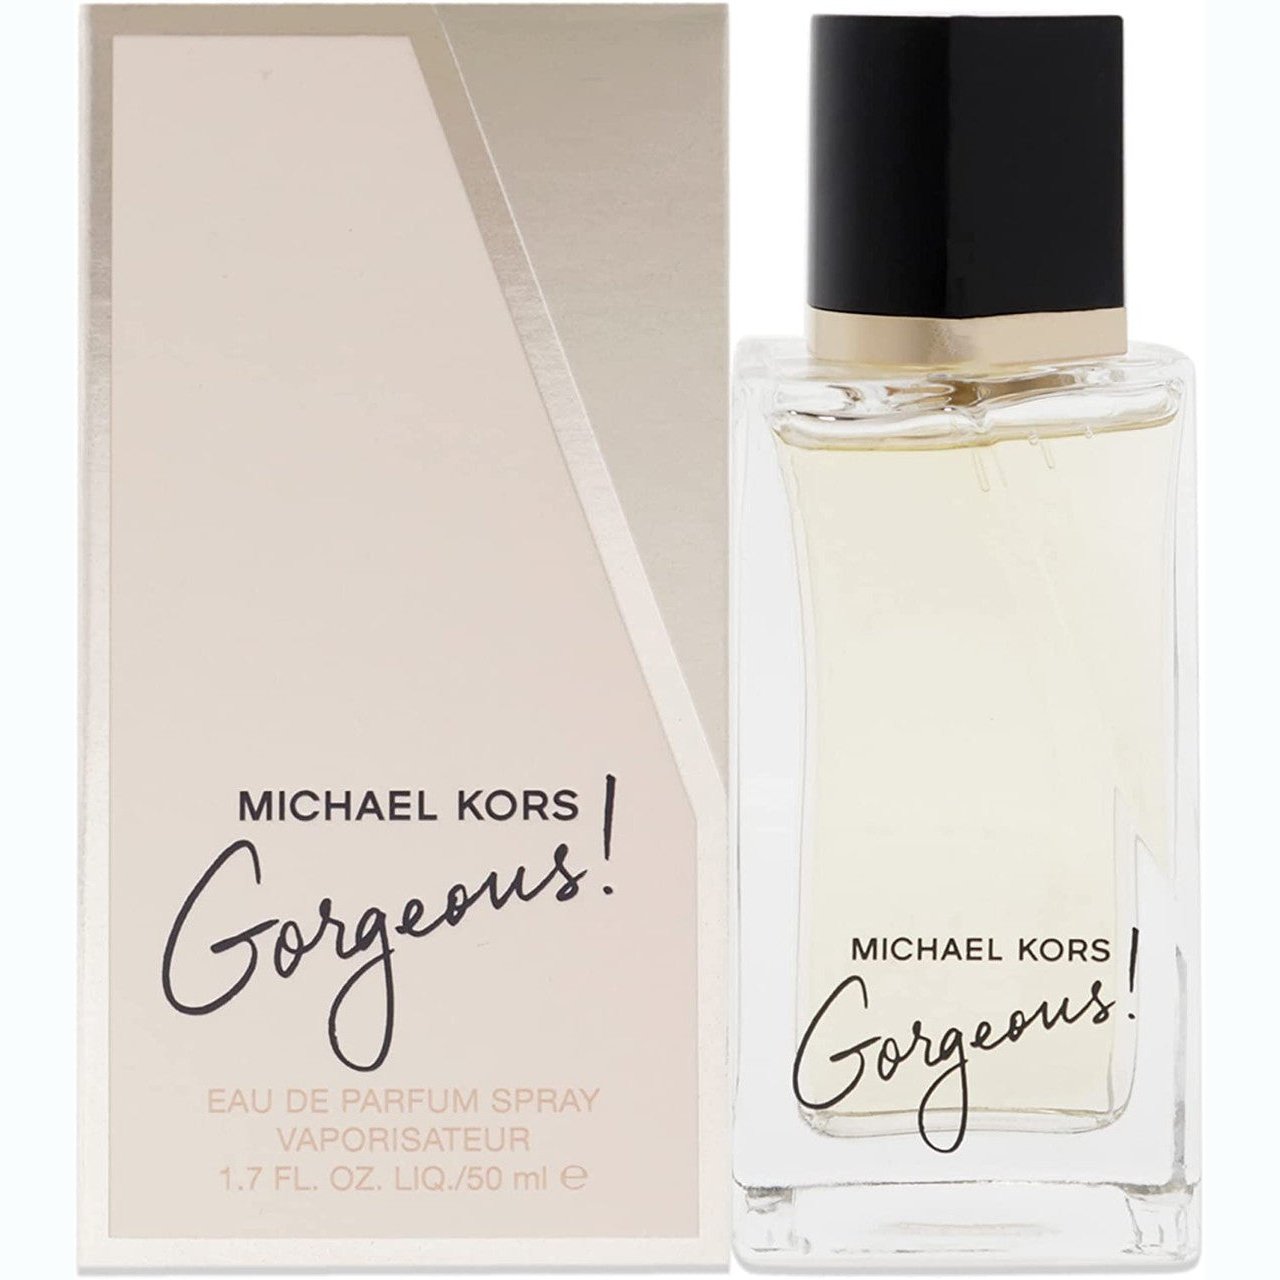 Michael Kors Gorgeous! Eau de Parfum 50ml Spray